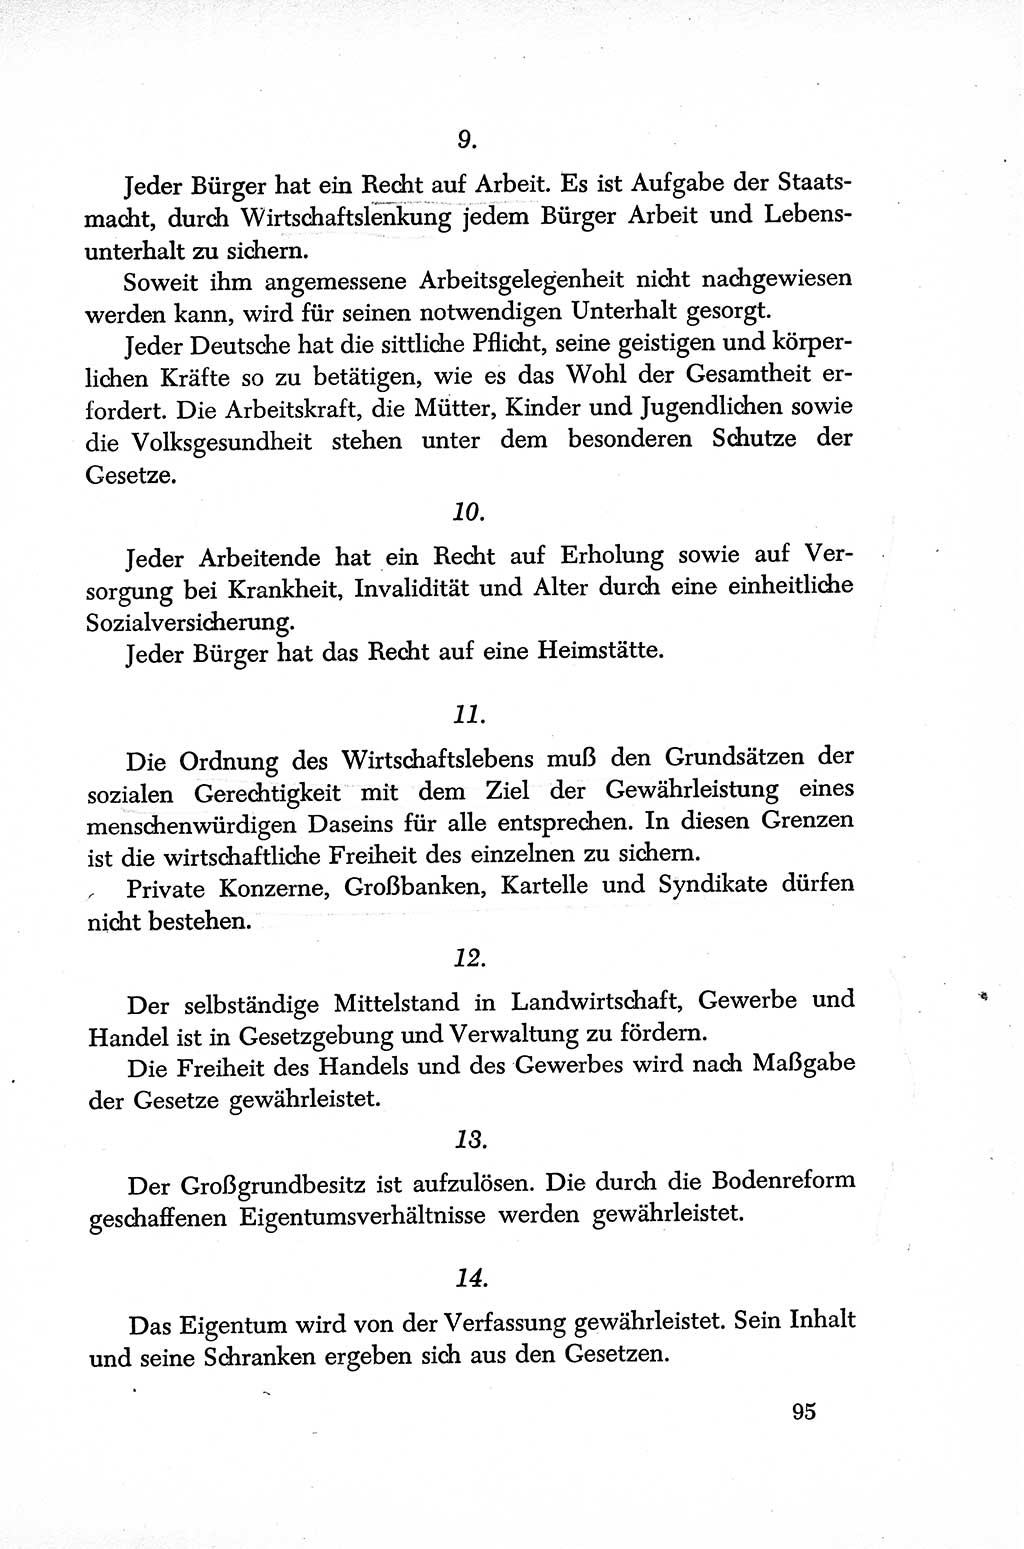 Dokumente der Sozialistischen Einheitspartei Deutschlands (SED) [Sowjetische Besatzungszone (SBZ) Deutschlands] 1946-1948, Seite 95 (Dok. SED SBZ Dtl. 1946-1948, S. 95)